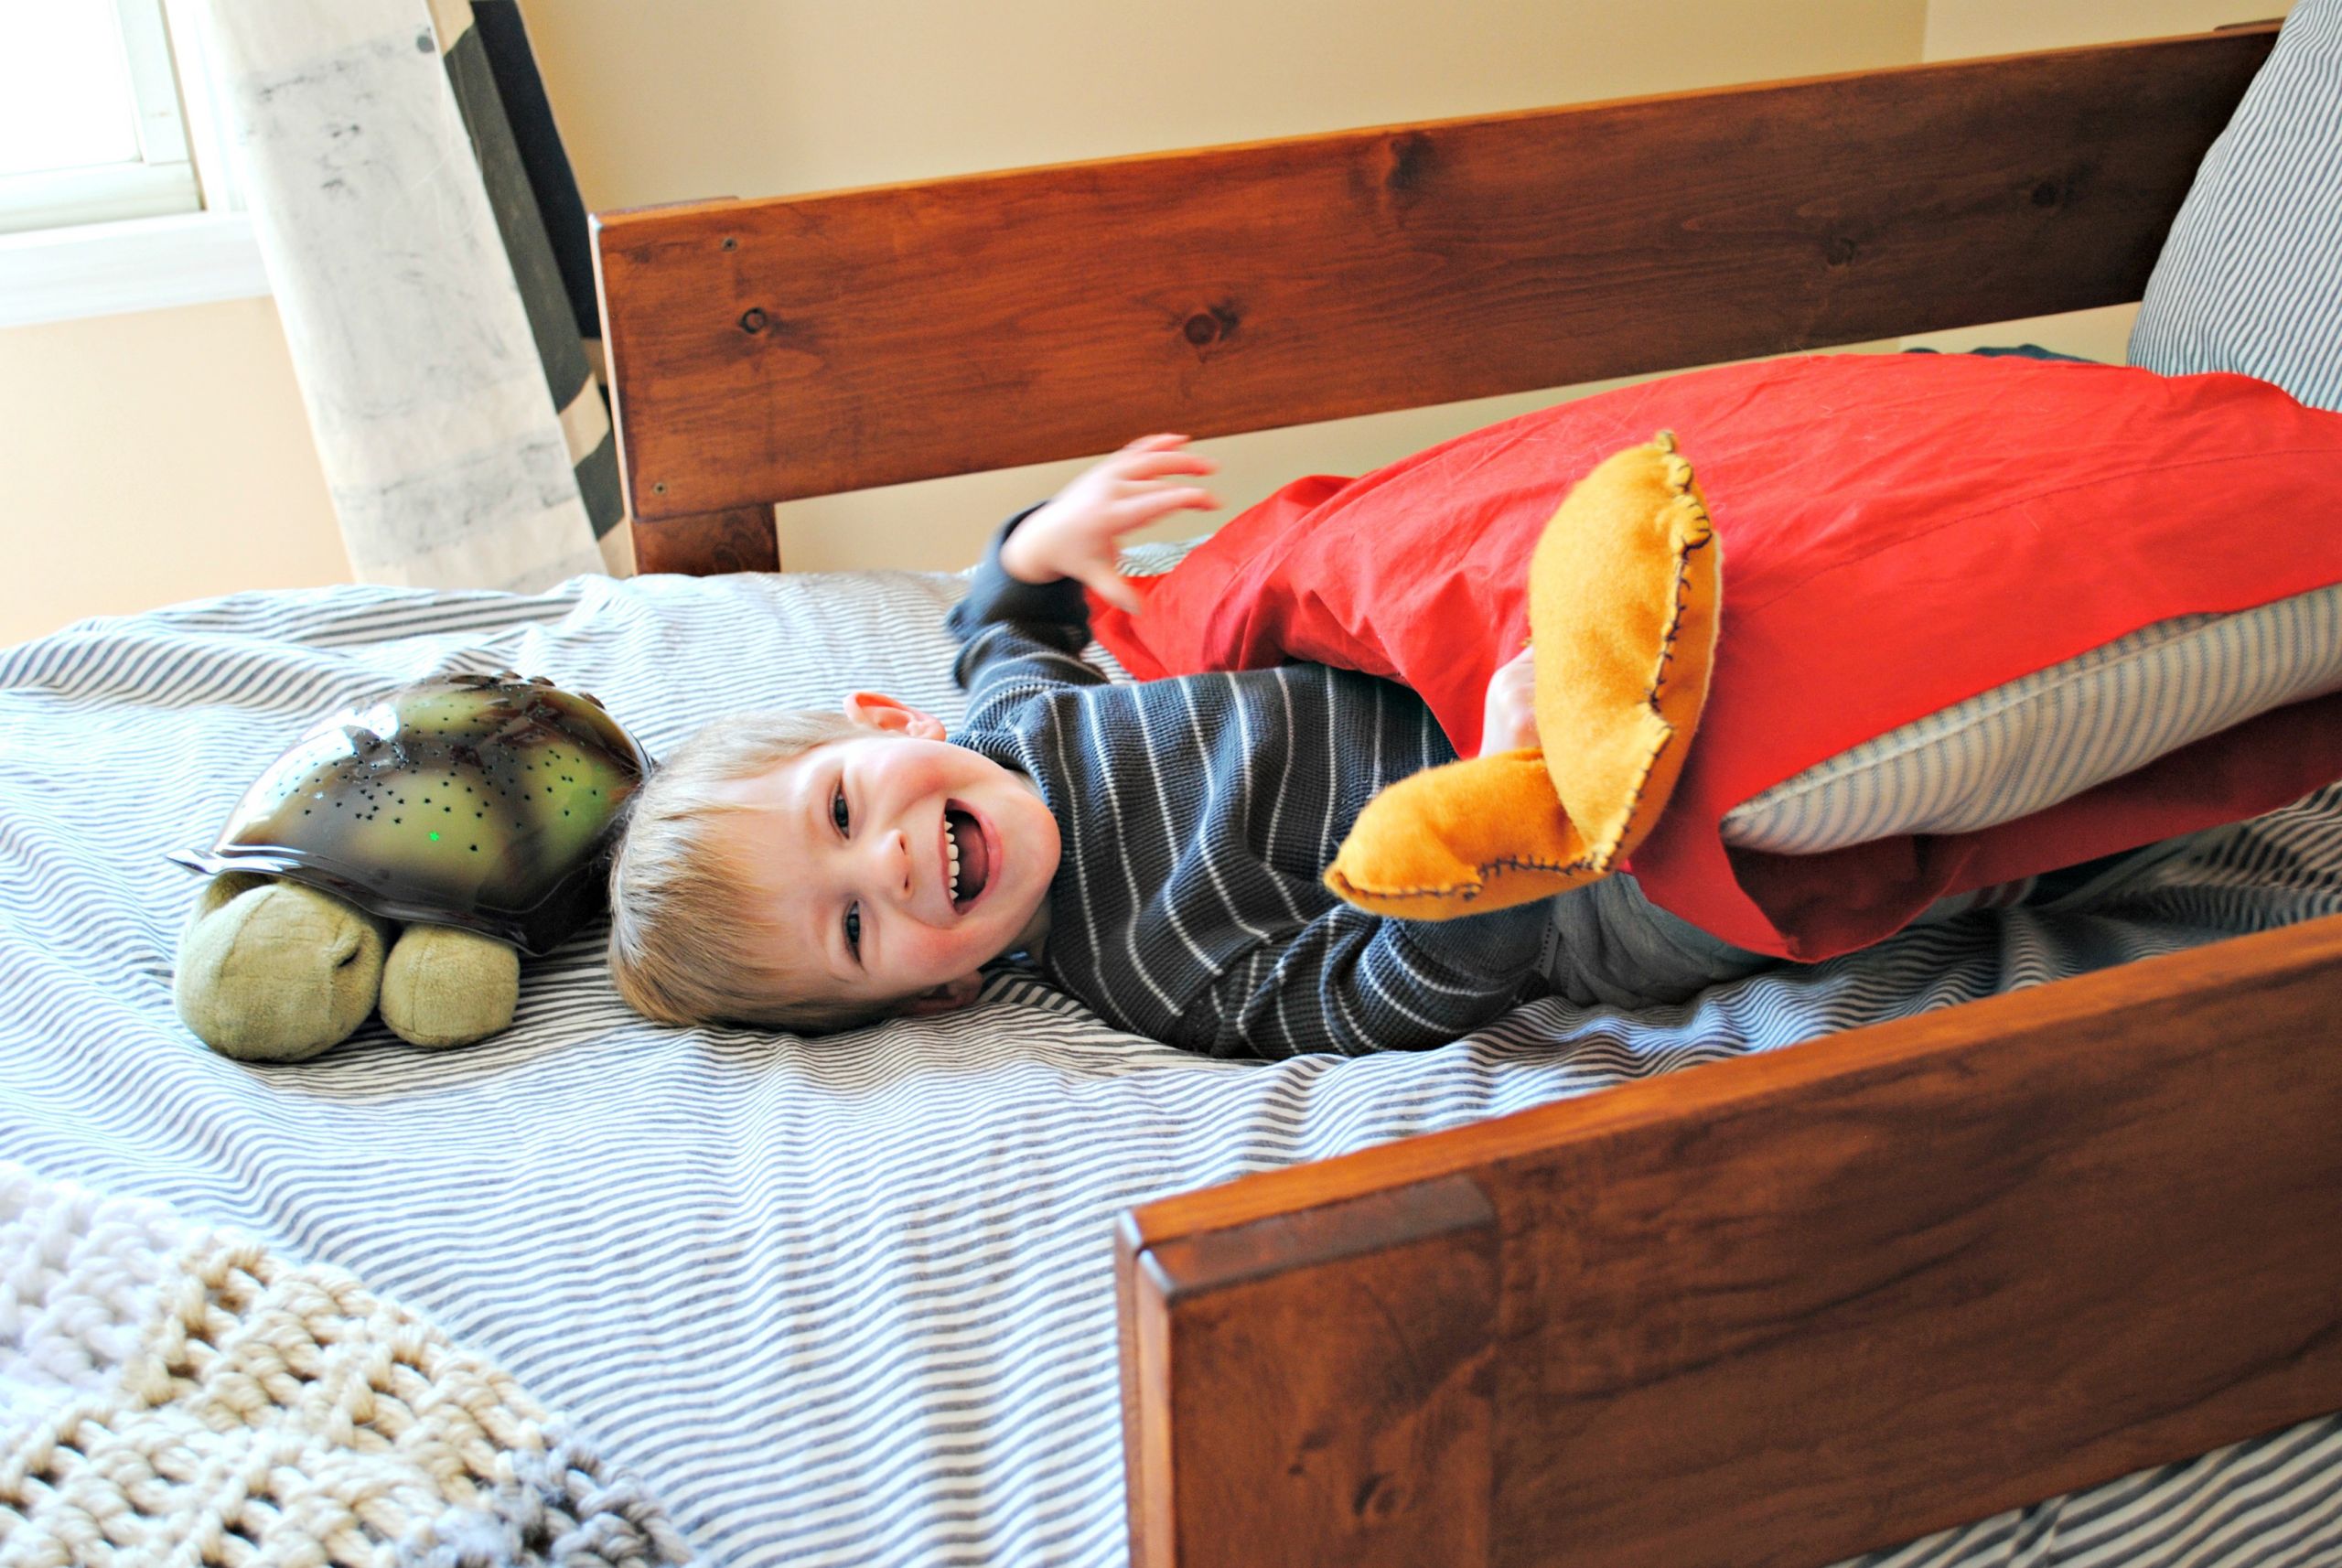 DIY Bed Rails For Toddler
 DIY Toddler Bed Rails Place in Progress